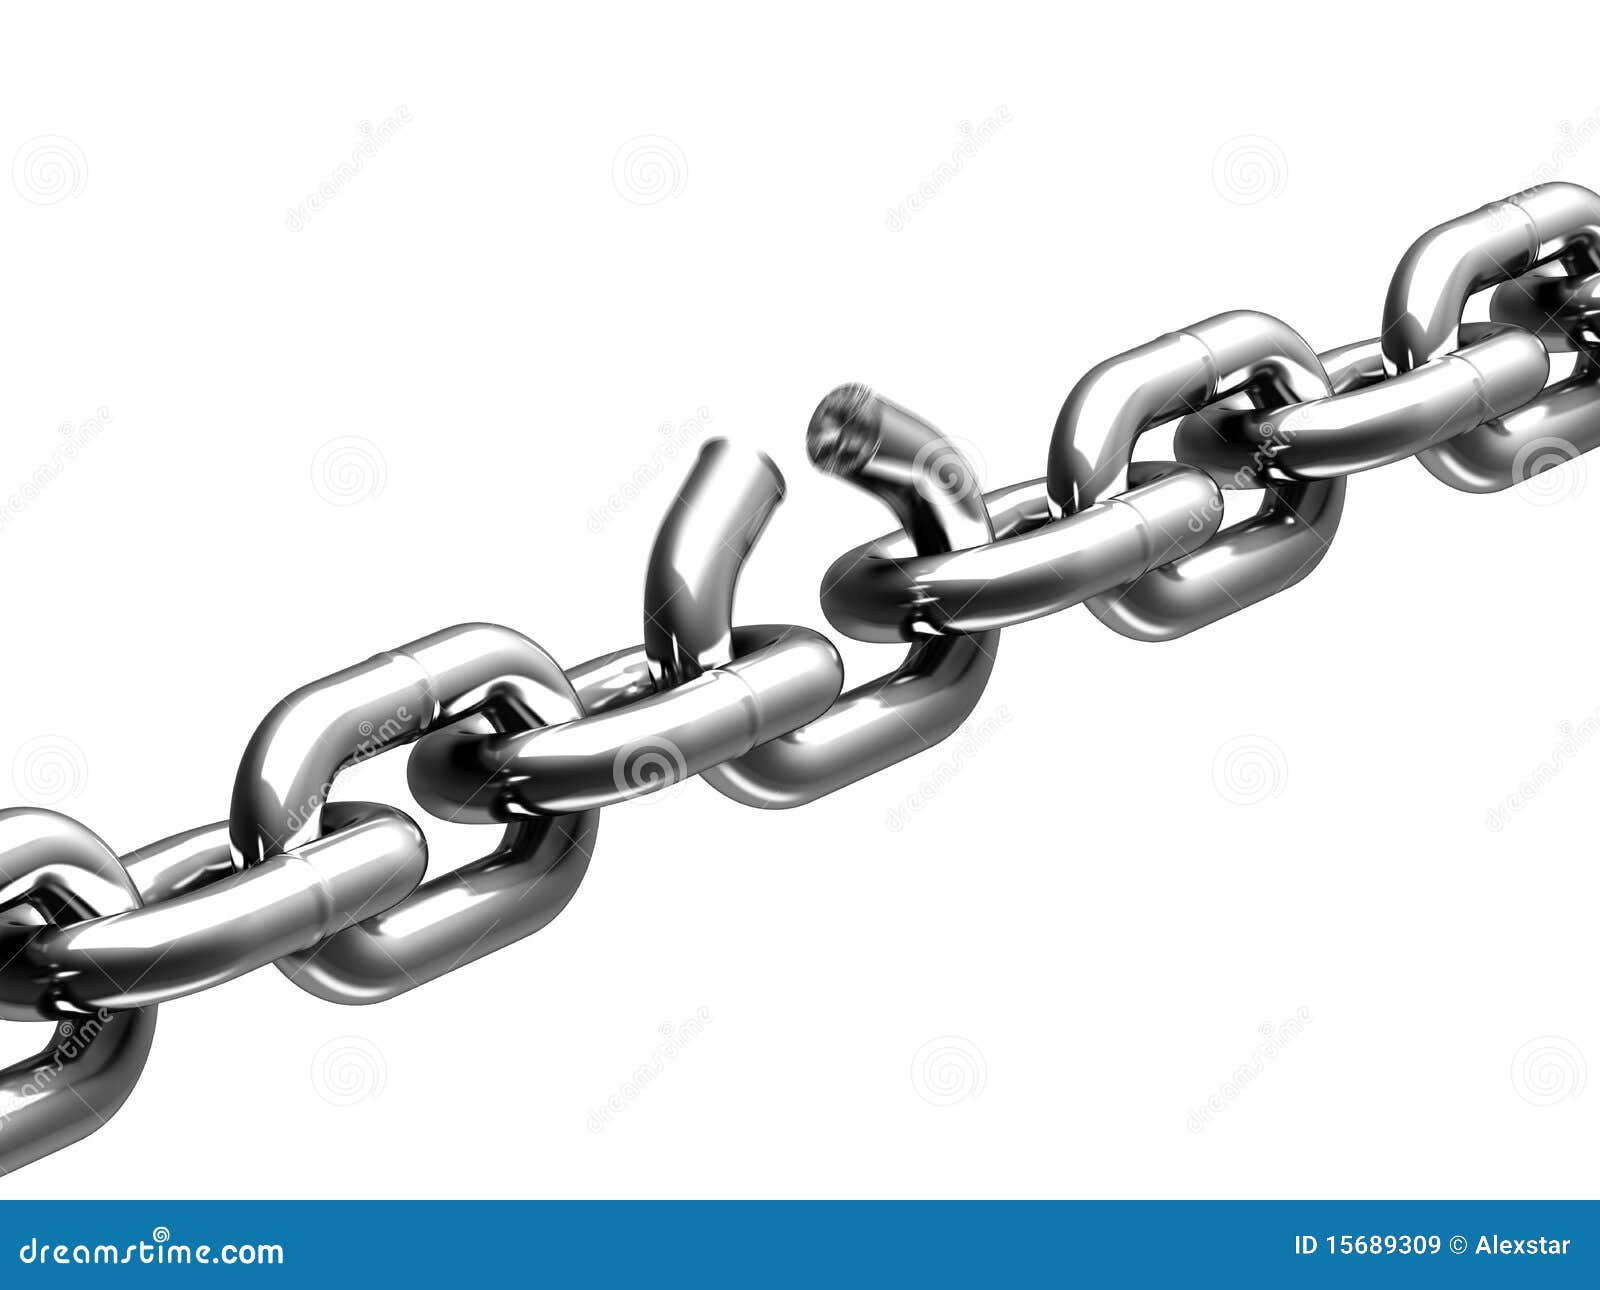 broken link in chain